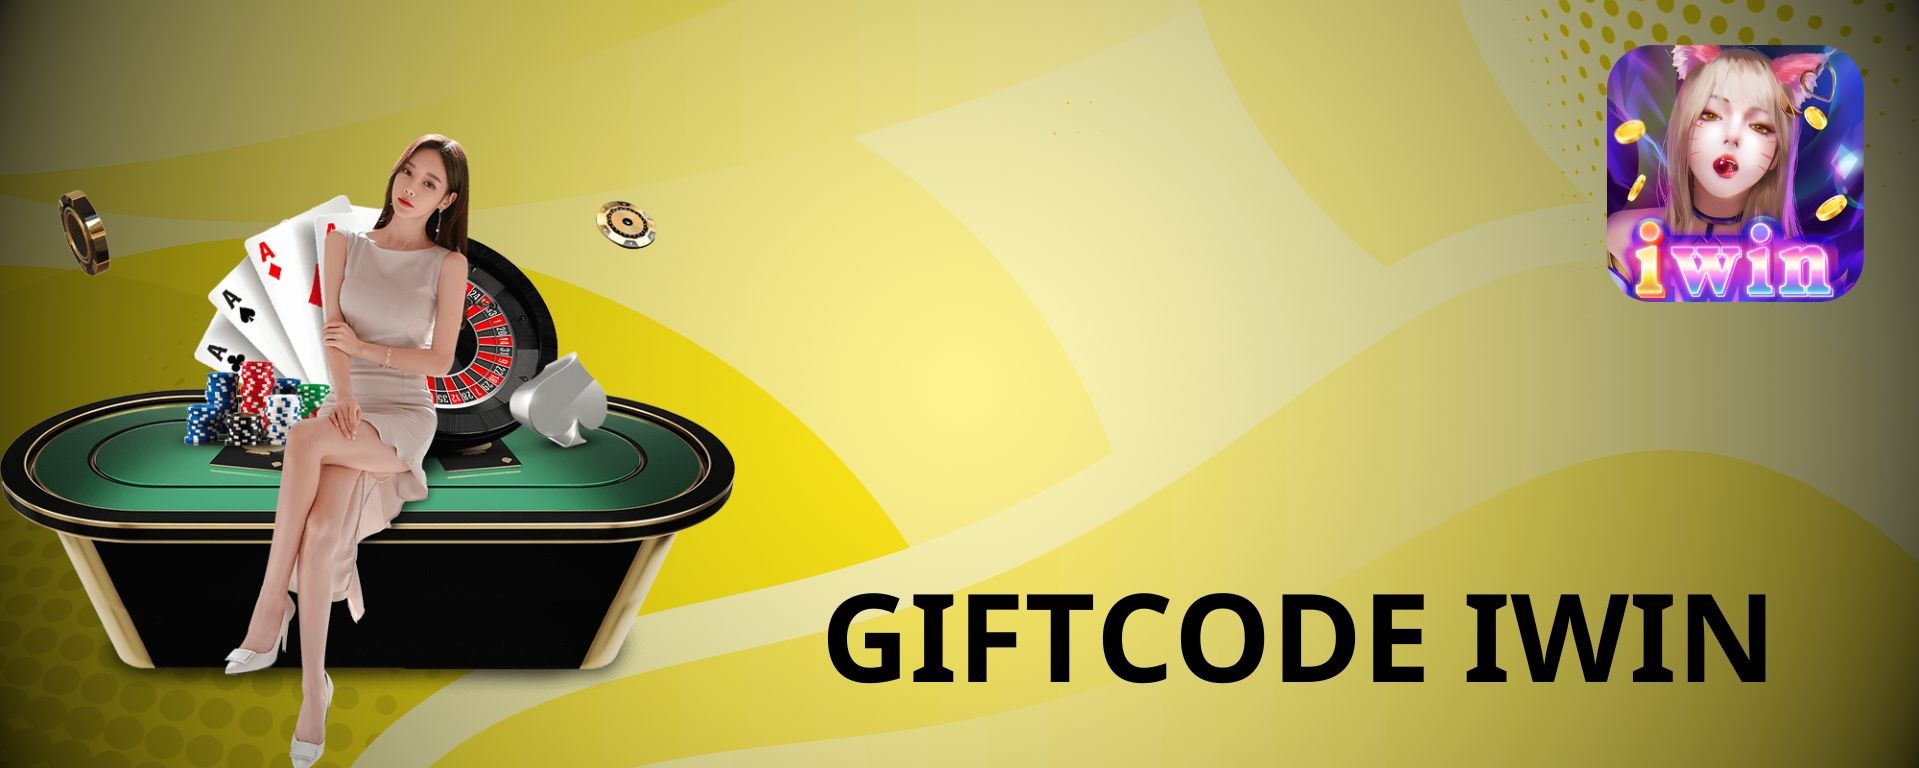 Sự kiện khuyến mãi Giftcode IWIN